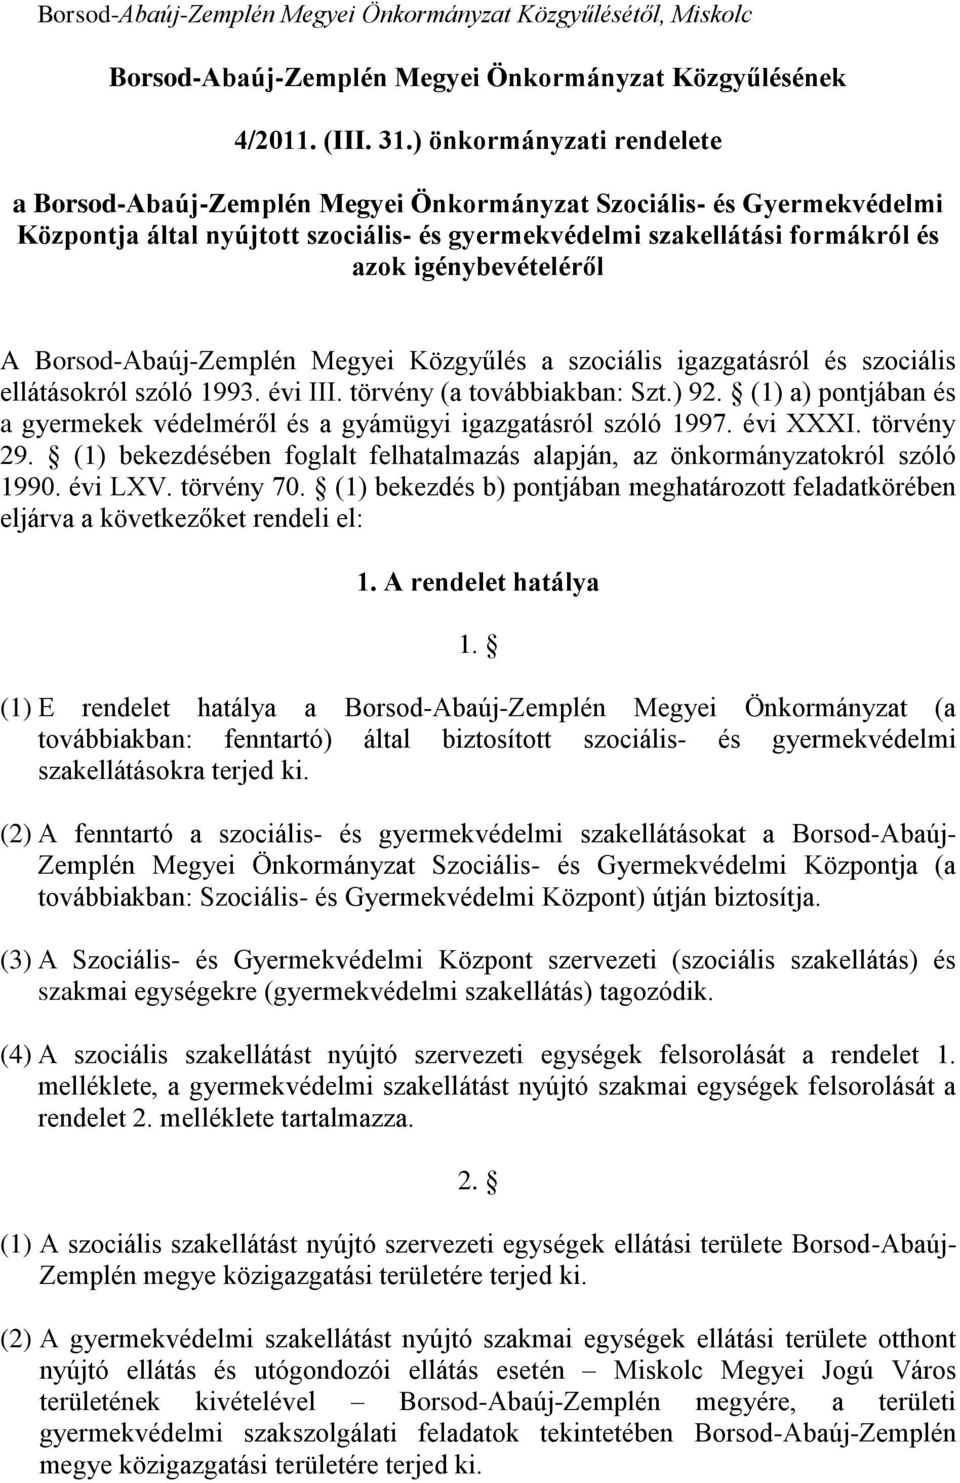 A Borsod-Abaúj-Zemplén Megyei Közgyűlés a szociális igazgatásról és szociális ellátásokról szóló 1993. évi III. törvény (a továbbiakban: Szt.) 92.